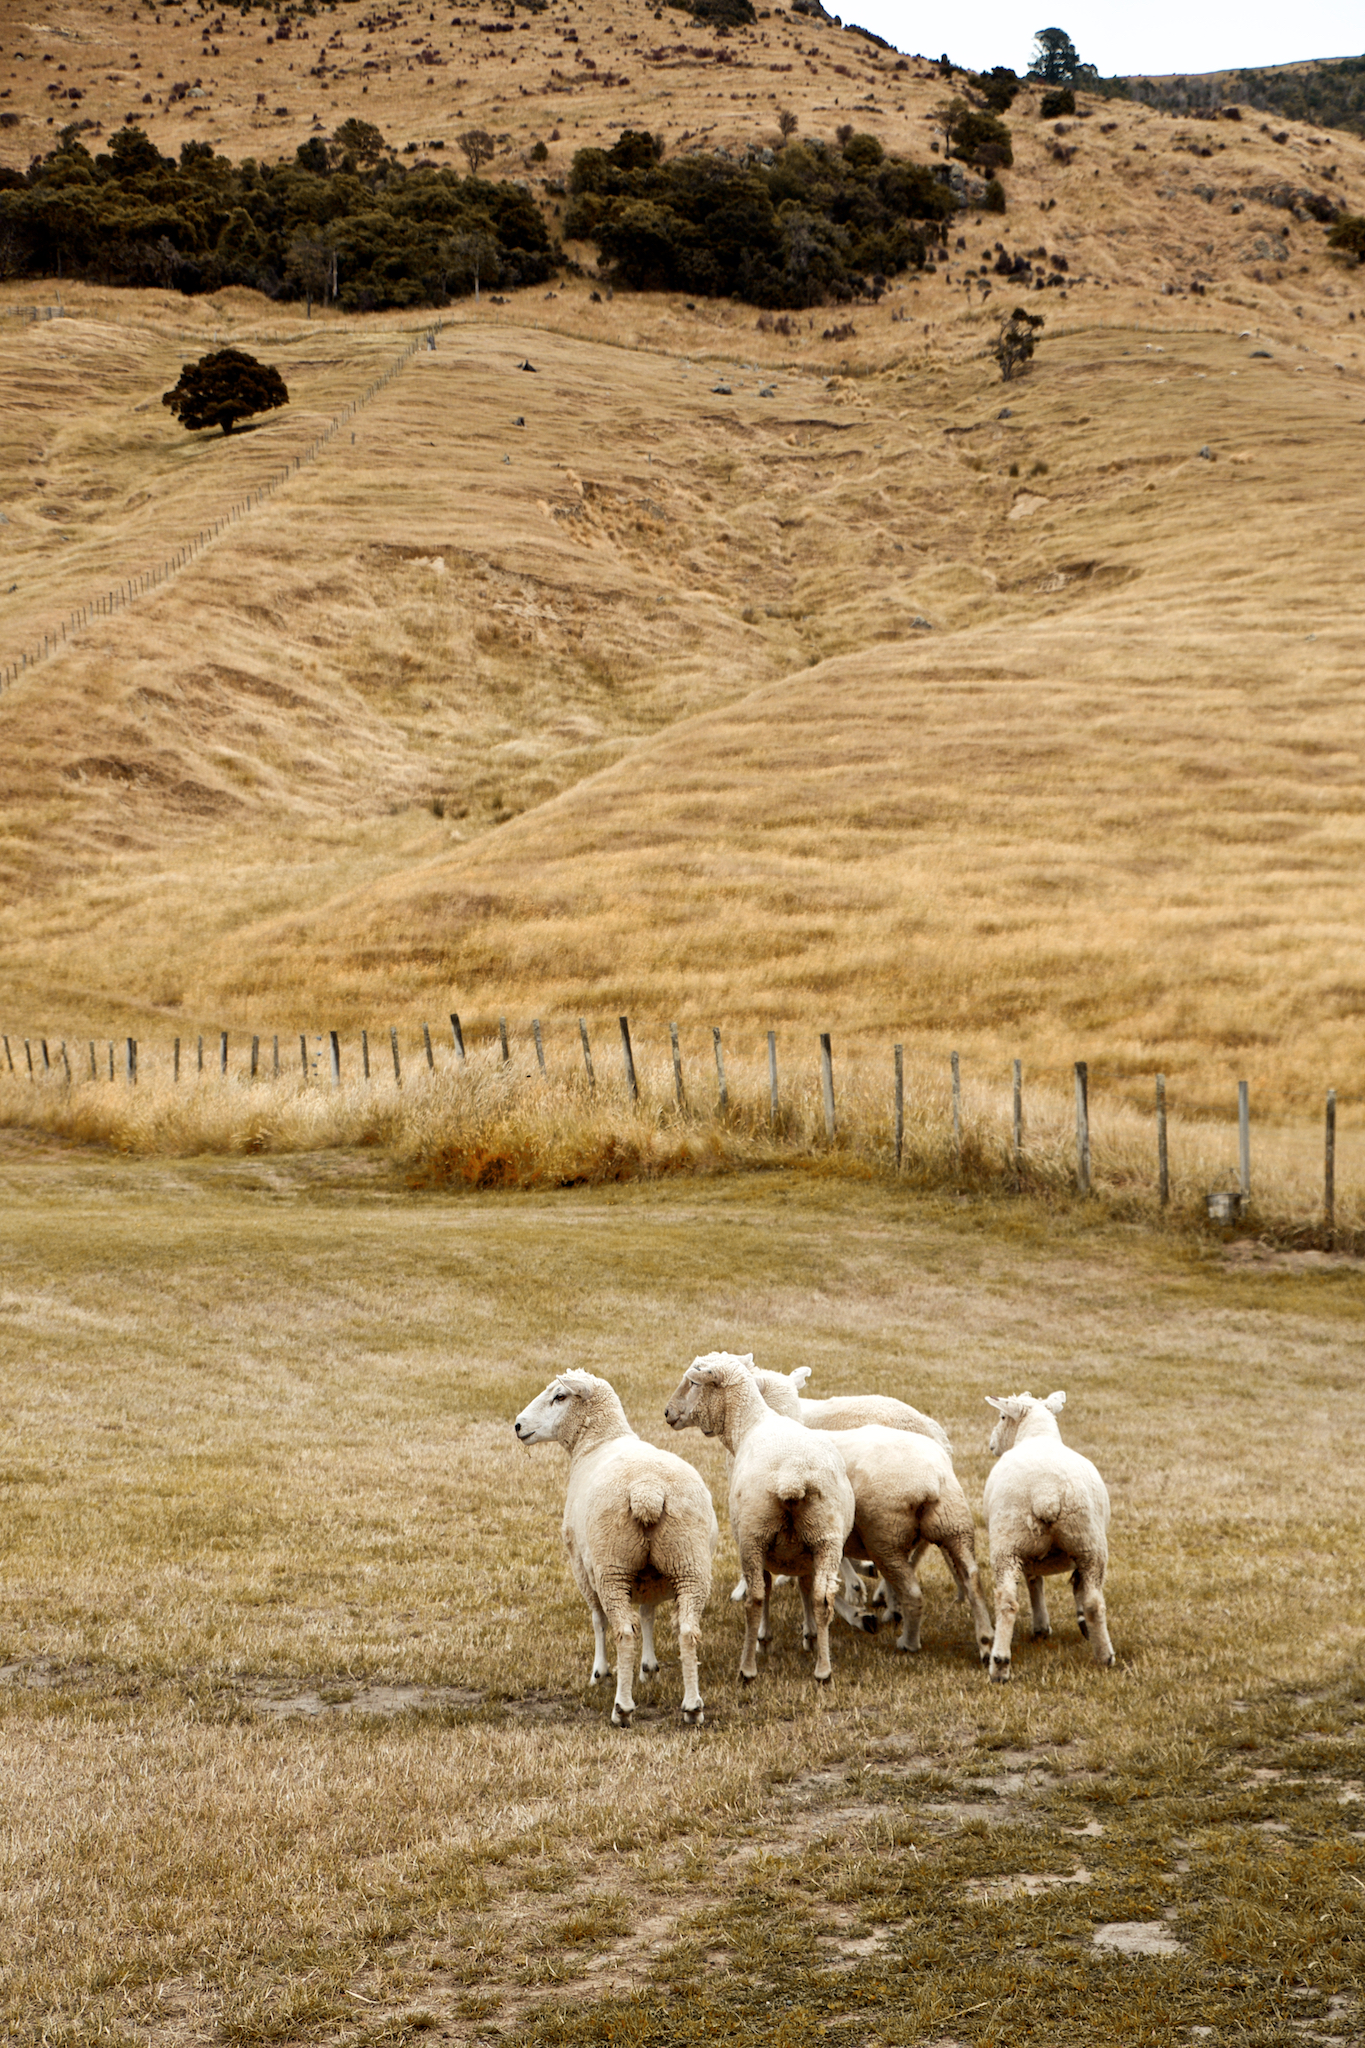 Akaroa Port New Zealand - things to do in New Zealand Akaroa sheep farm scotland